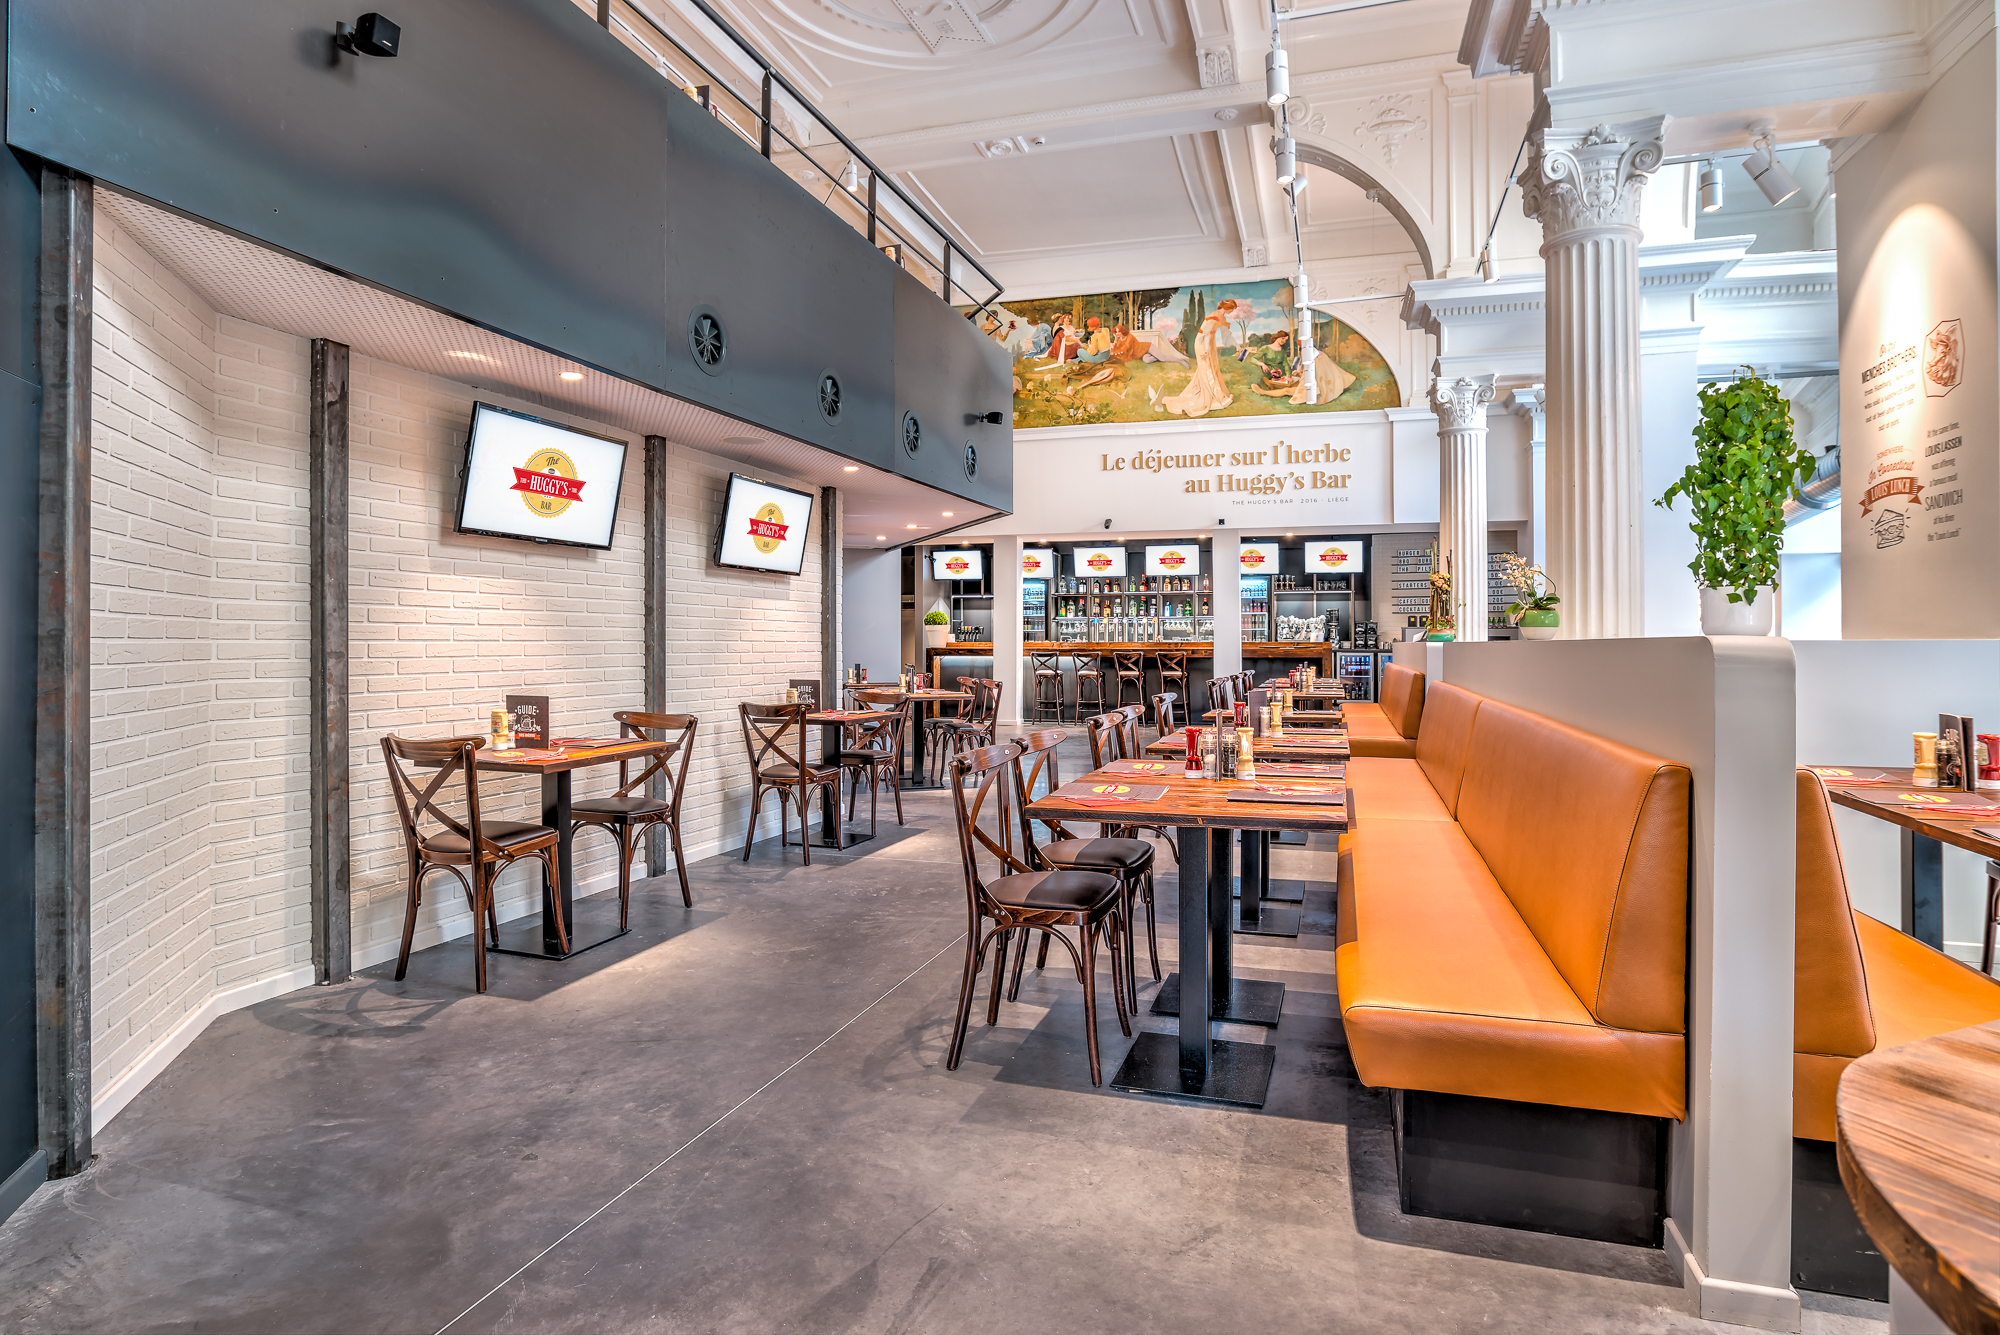 Architecte d’intérieur basé à Liège, spécialisé dans la conception et l'agencement de restaurants, magasins et autres espaces professionnels.